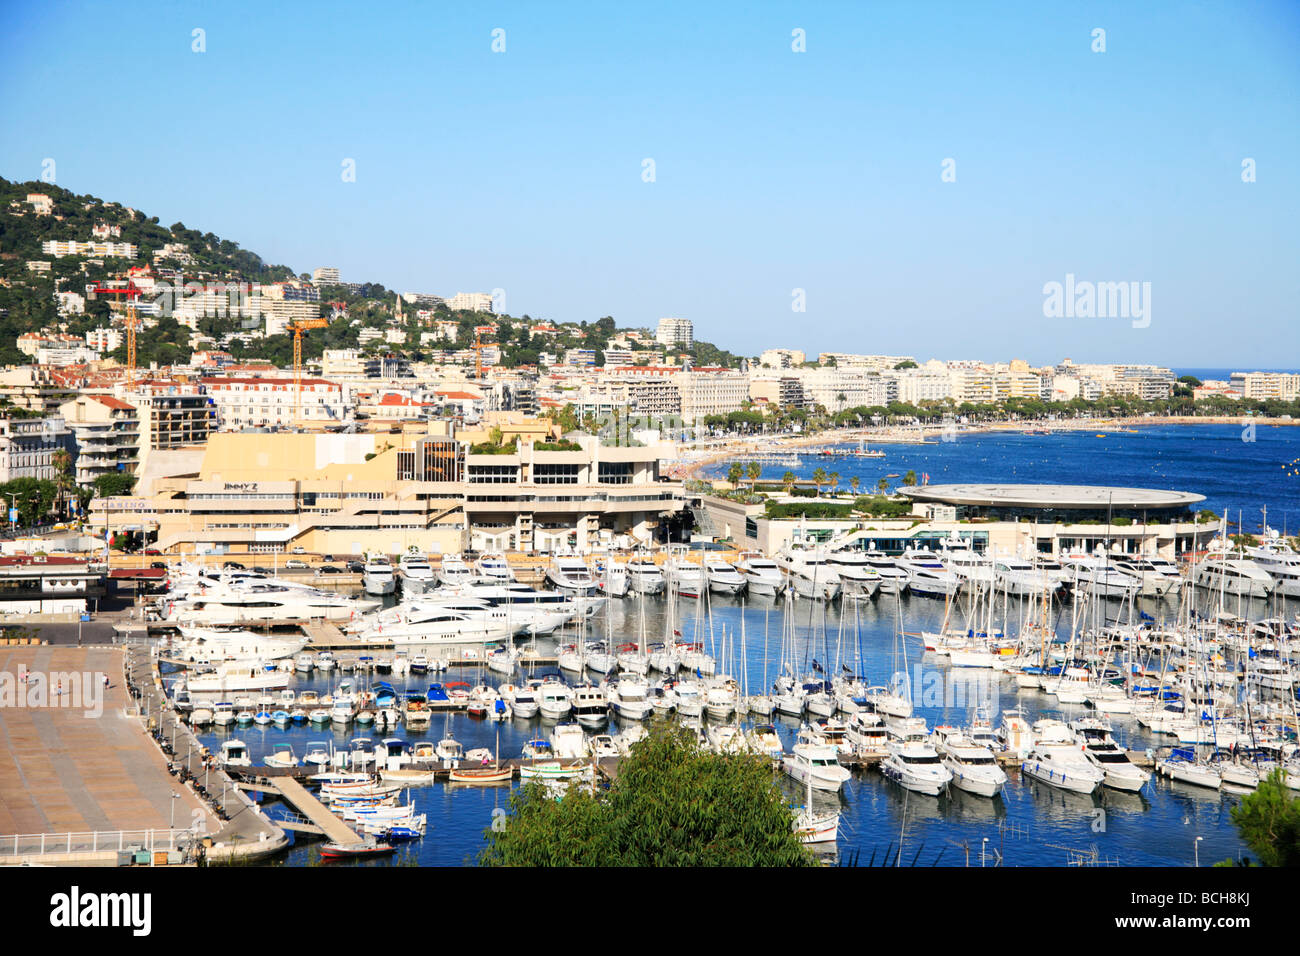 Alten Hafen und Palais de Festivals Austragungsort der Filmfestspiele von Cannes Stockfoto